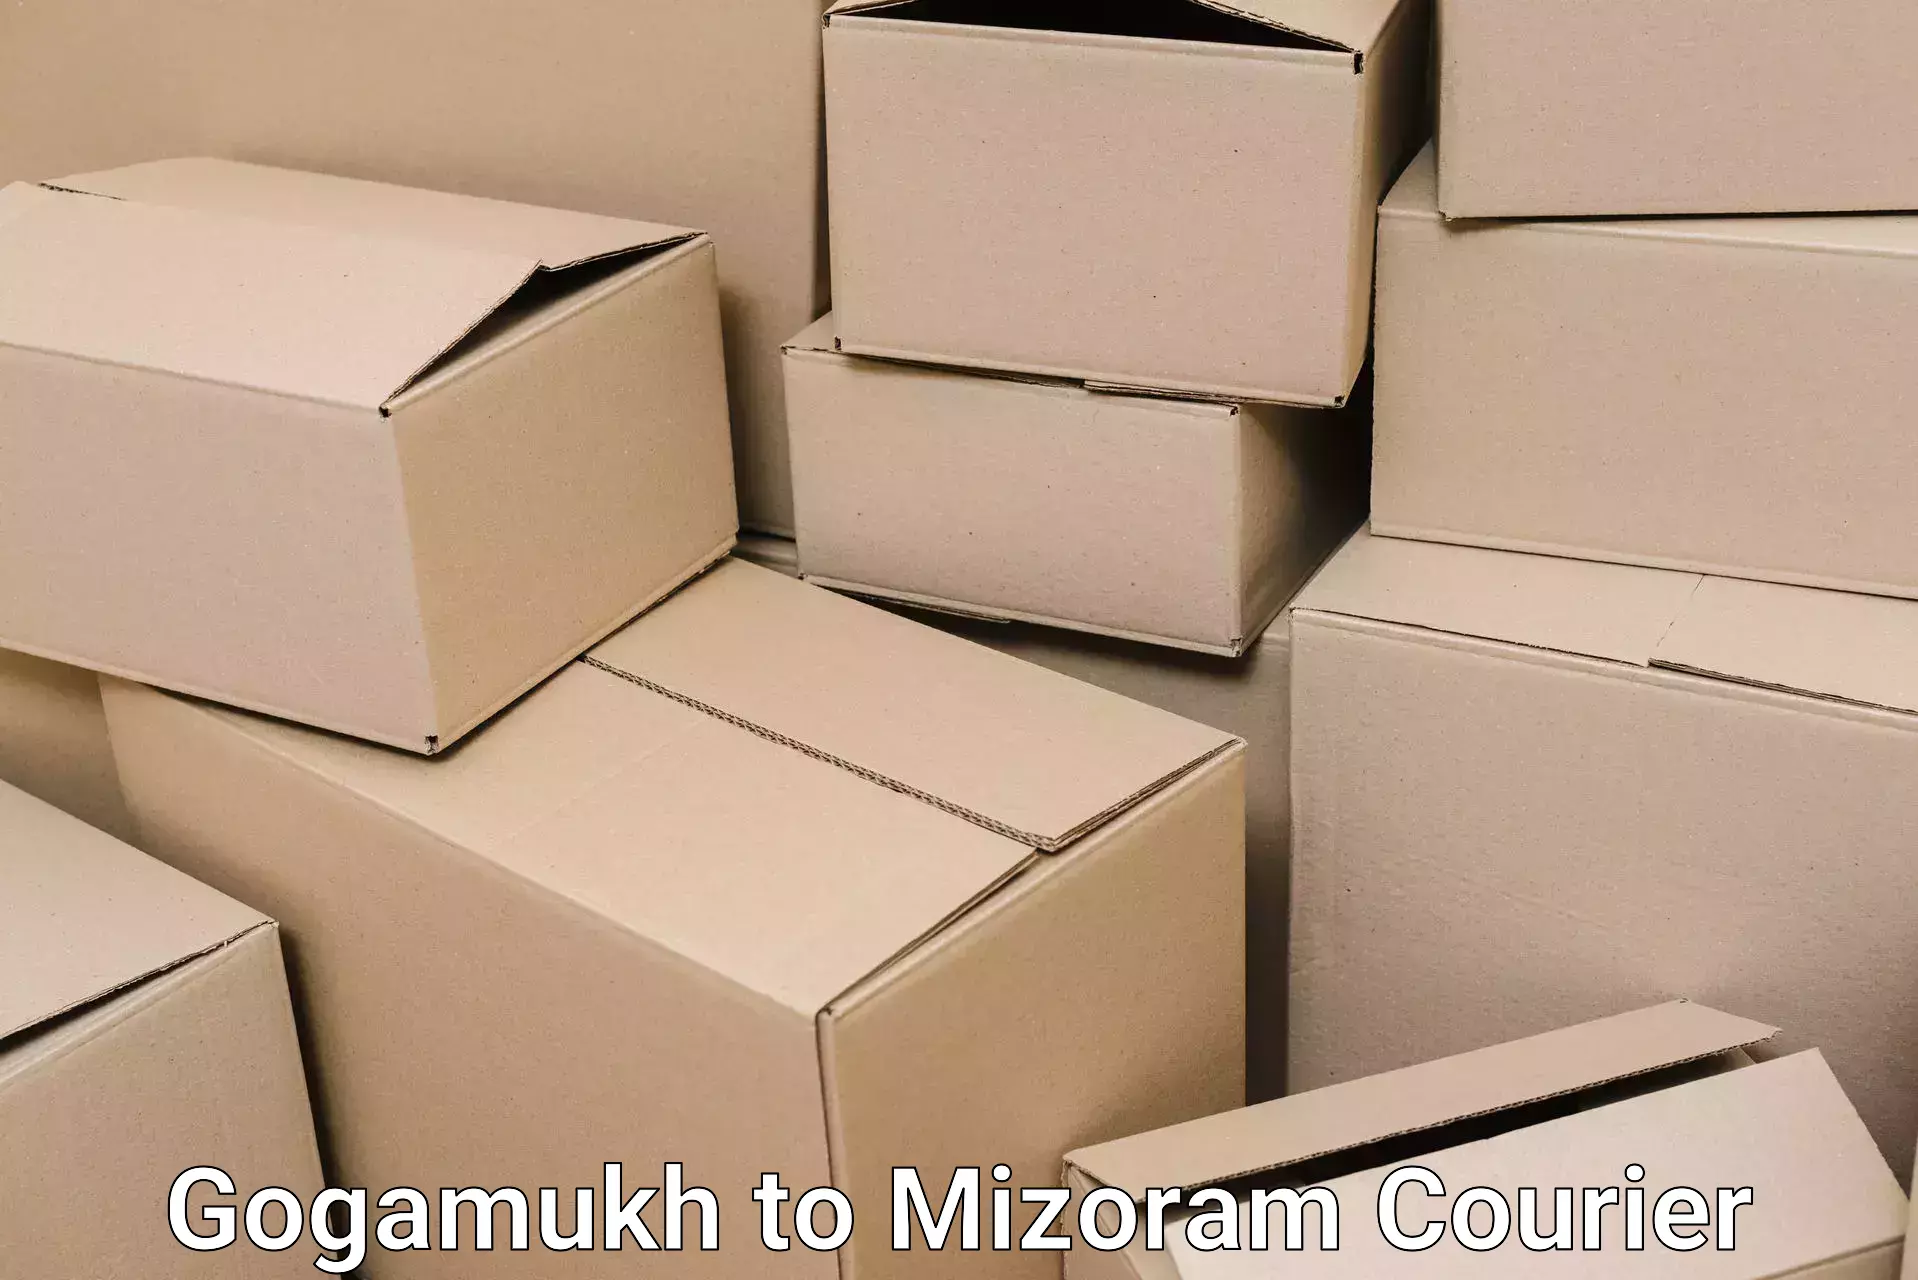 Moving and packing experts Gogamukh to Mizoram